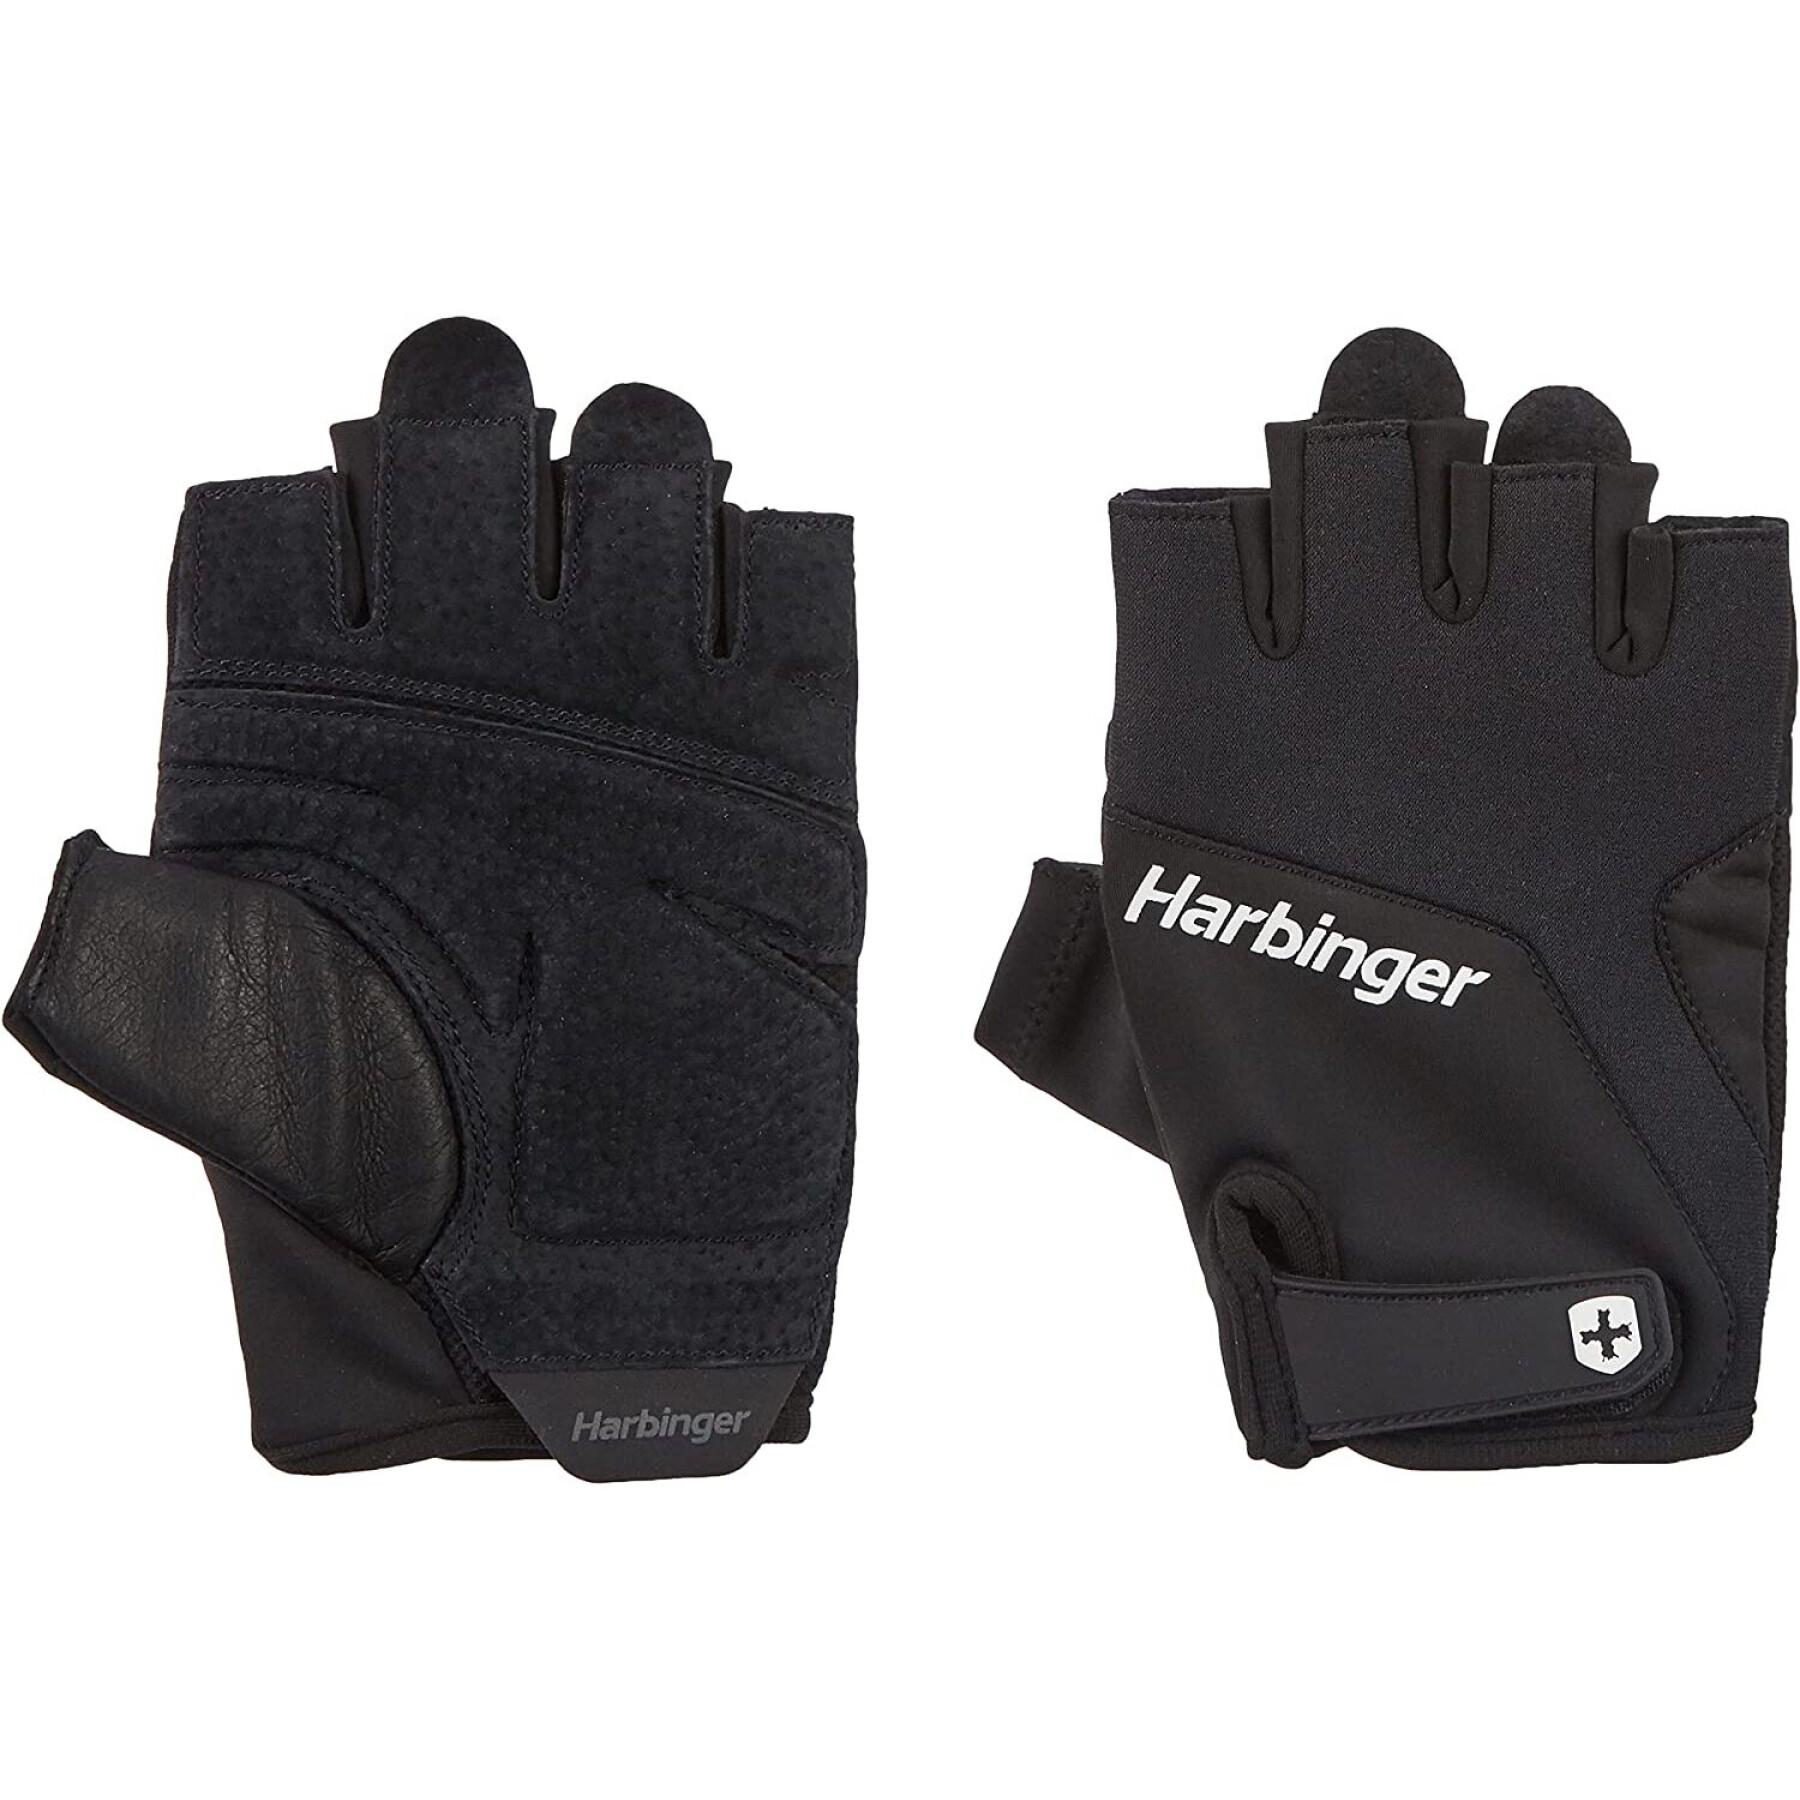 Gloves from Fitness Harbinger Training Grip 2.0